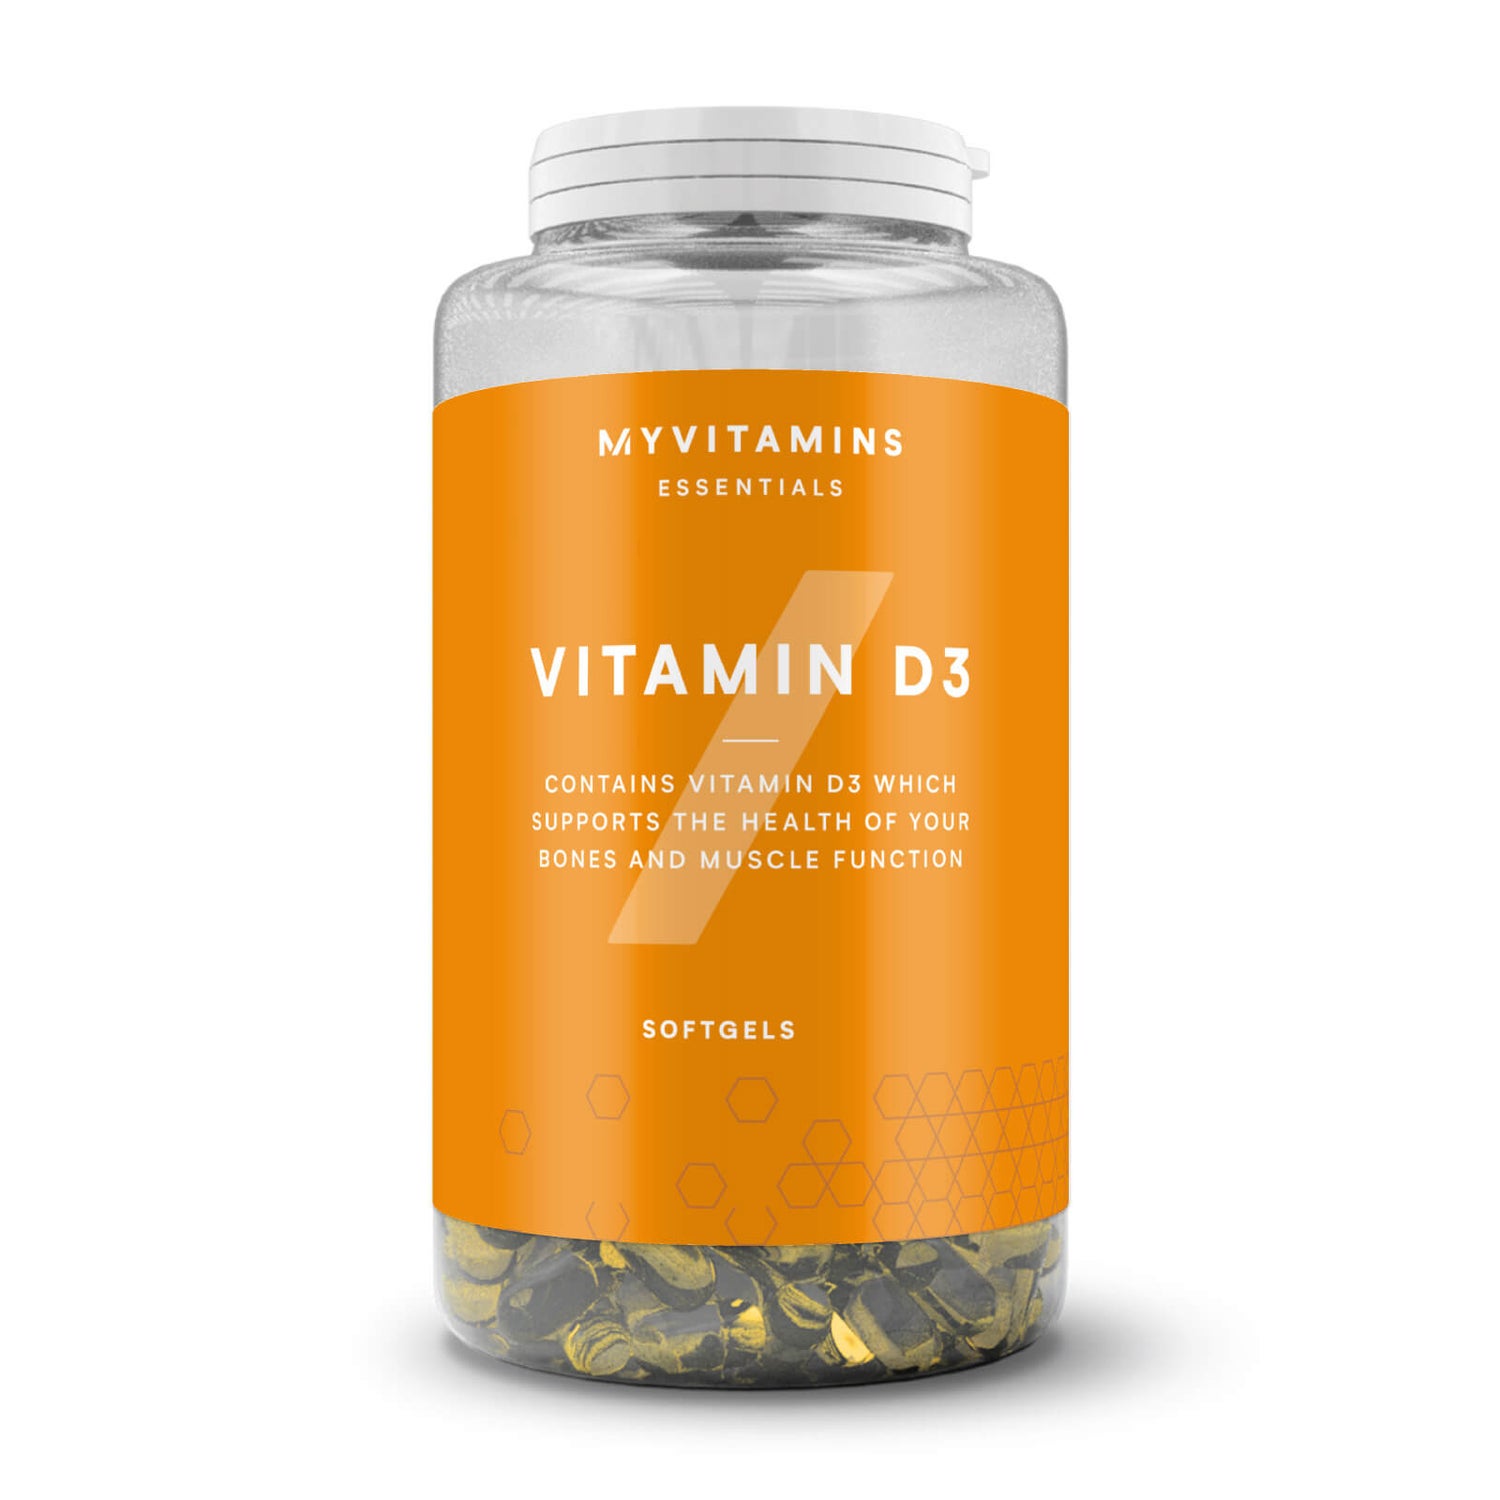 Vitamina D3 in capsule - 180Softgel - Non vegano